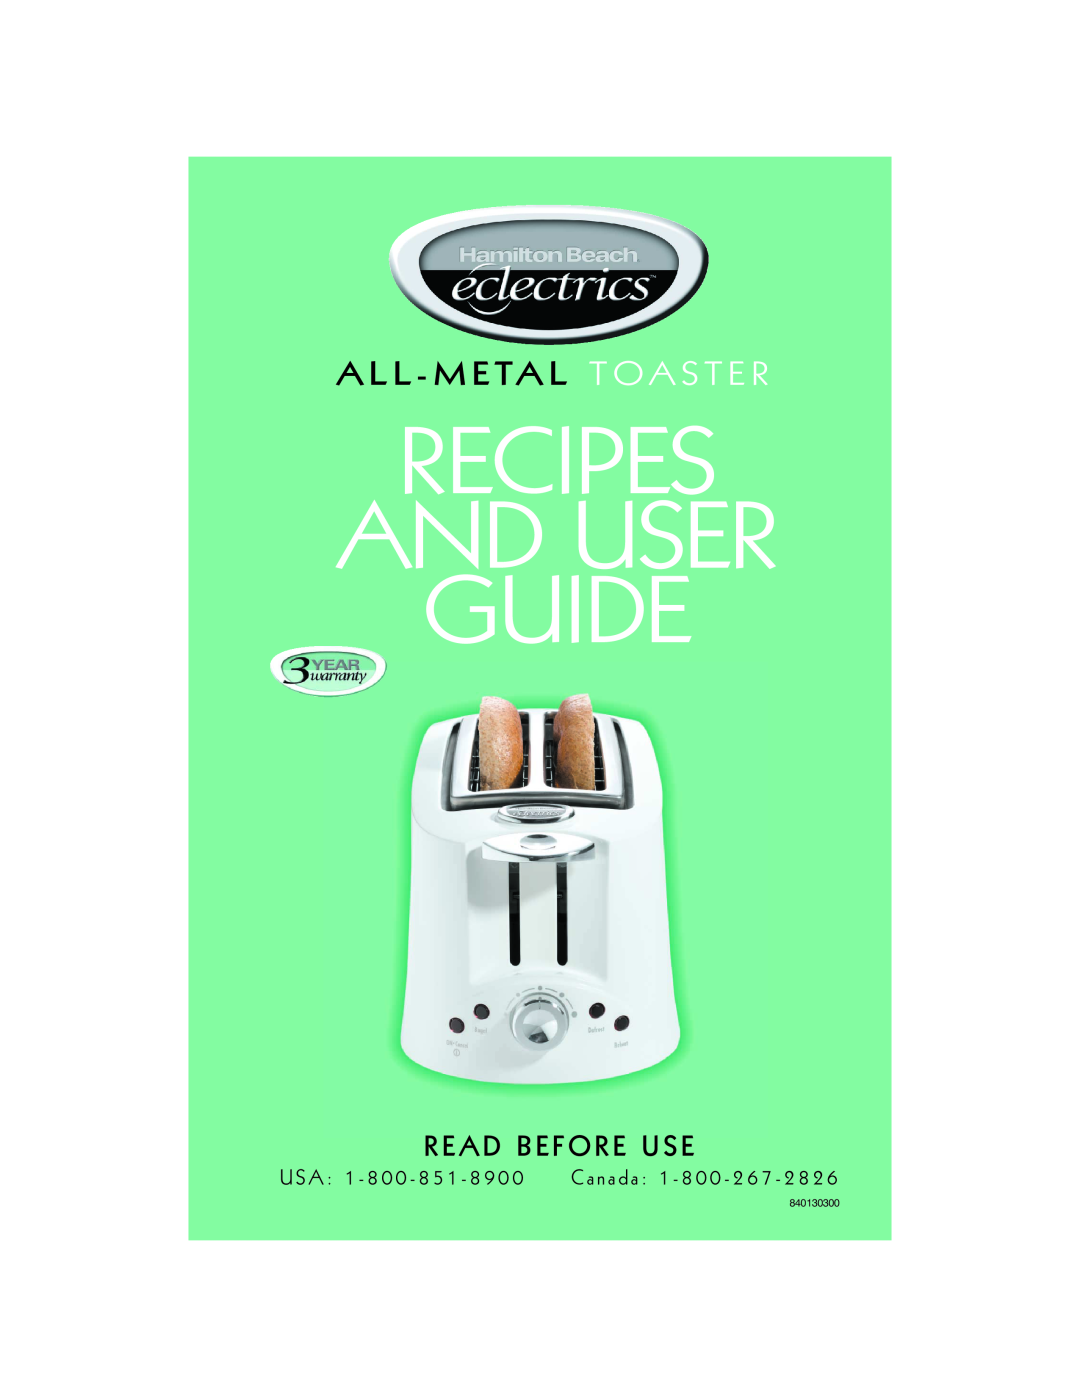 Hamilton Beach All-Metal Toaster manual Recipes And User Guide, A L L - M E Ta L T O A S T E R, R E A D B E F O R E U S E 